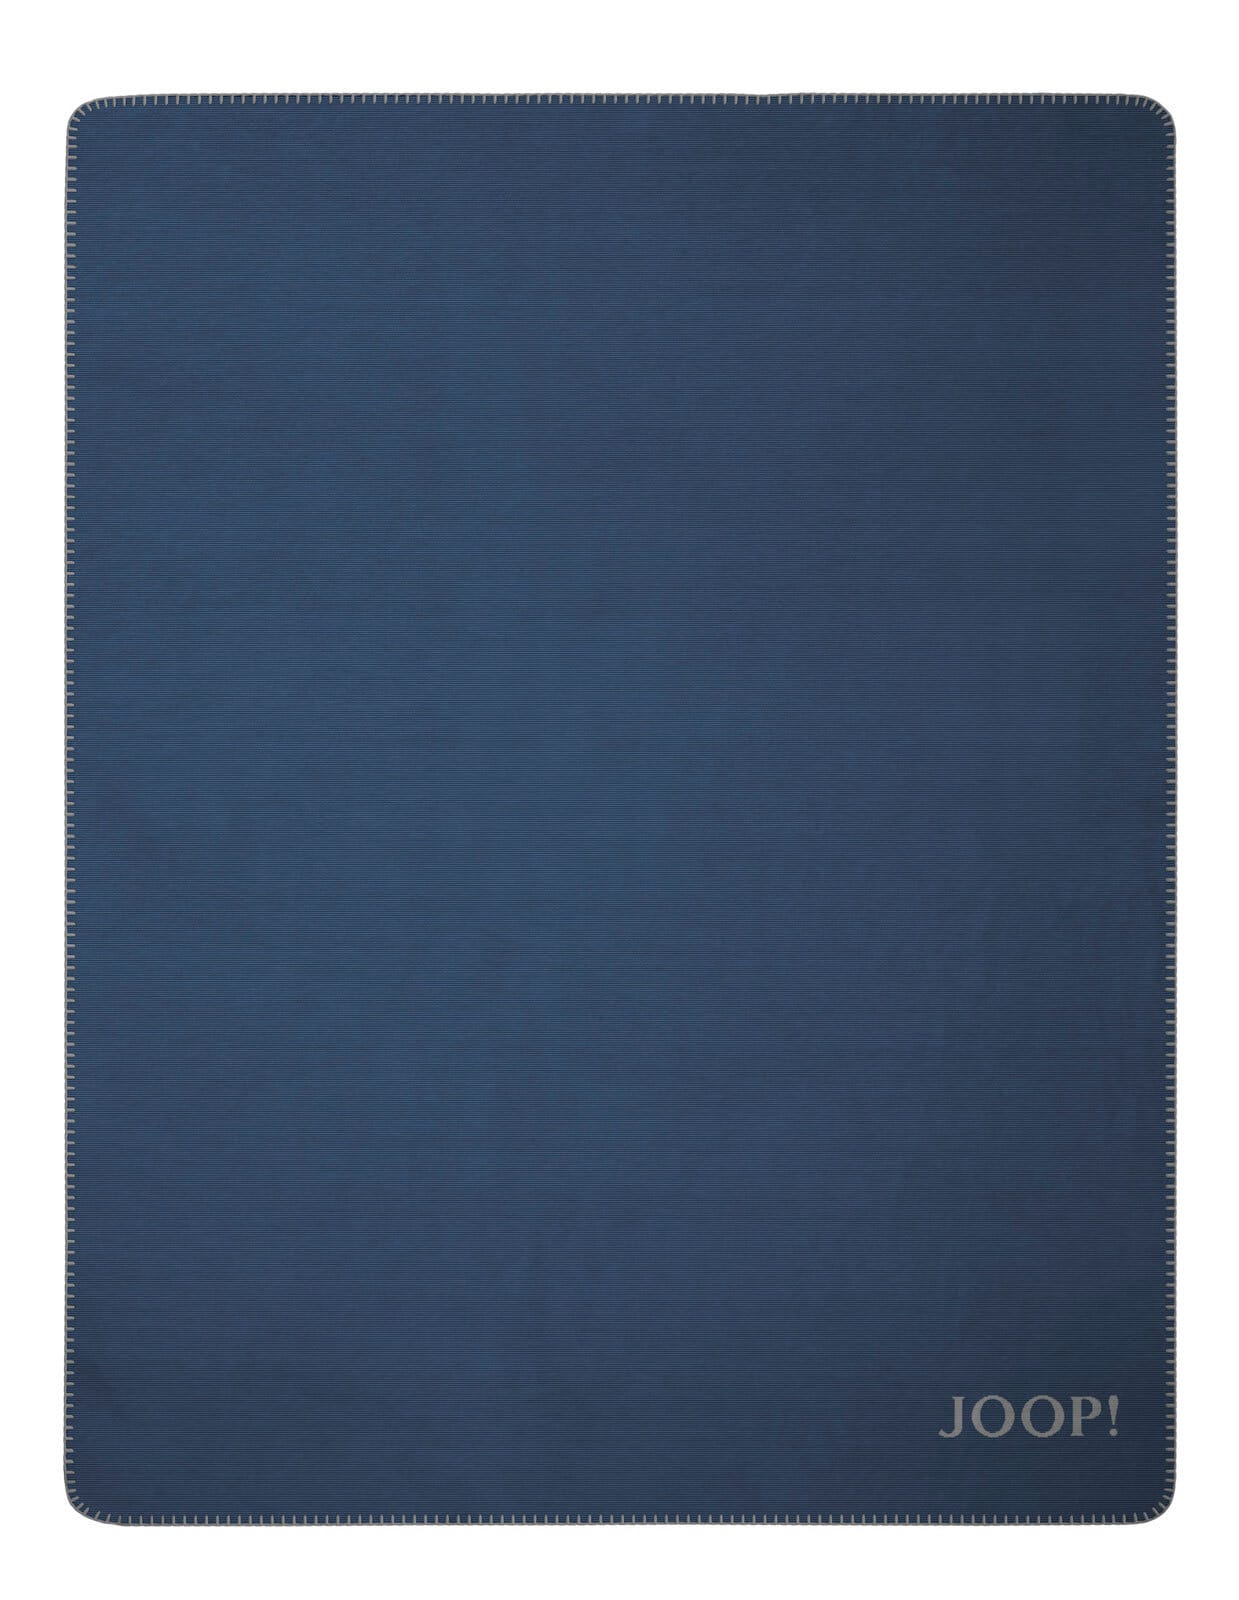 JOOP! Wohndecke MELANGE-DF 150 x 200 cm blau/grau